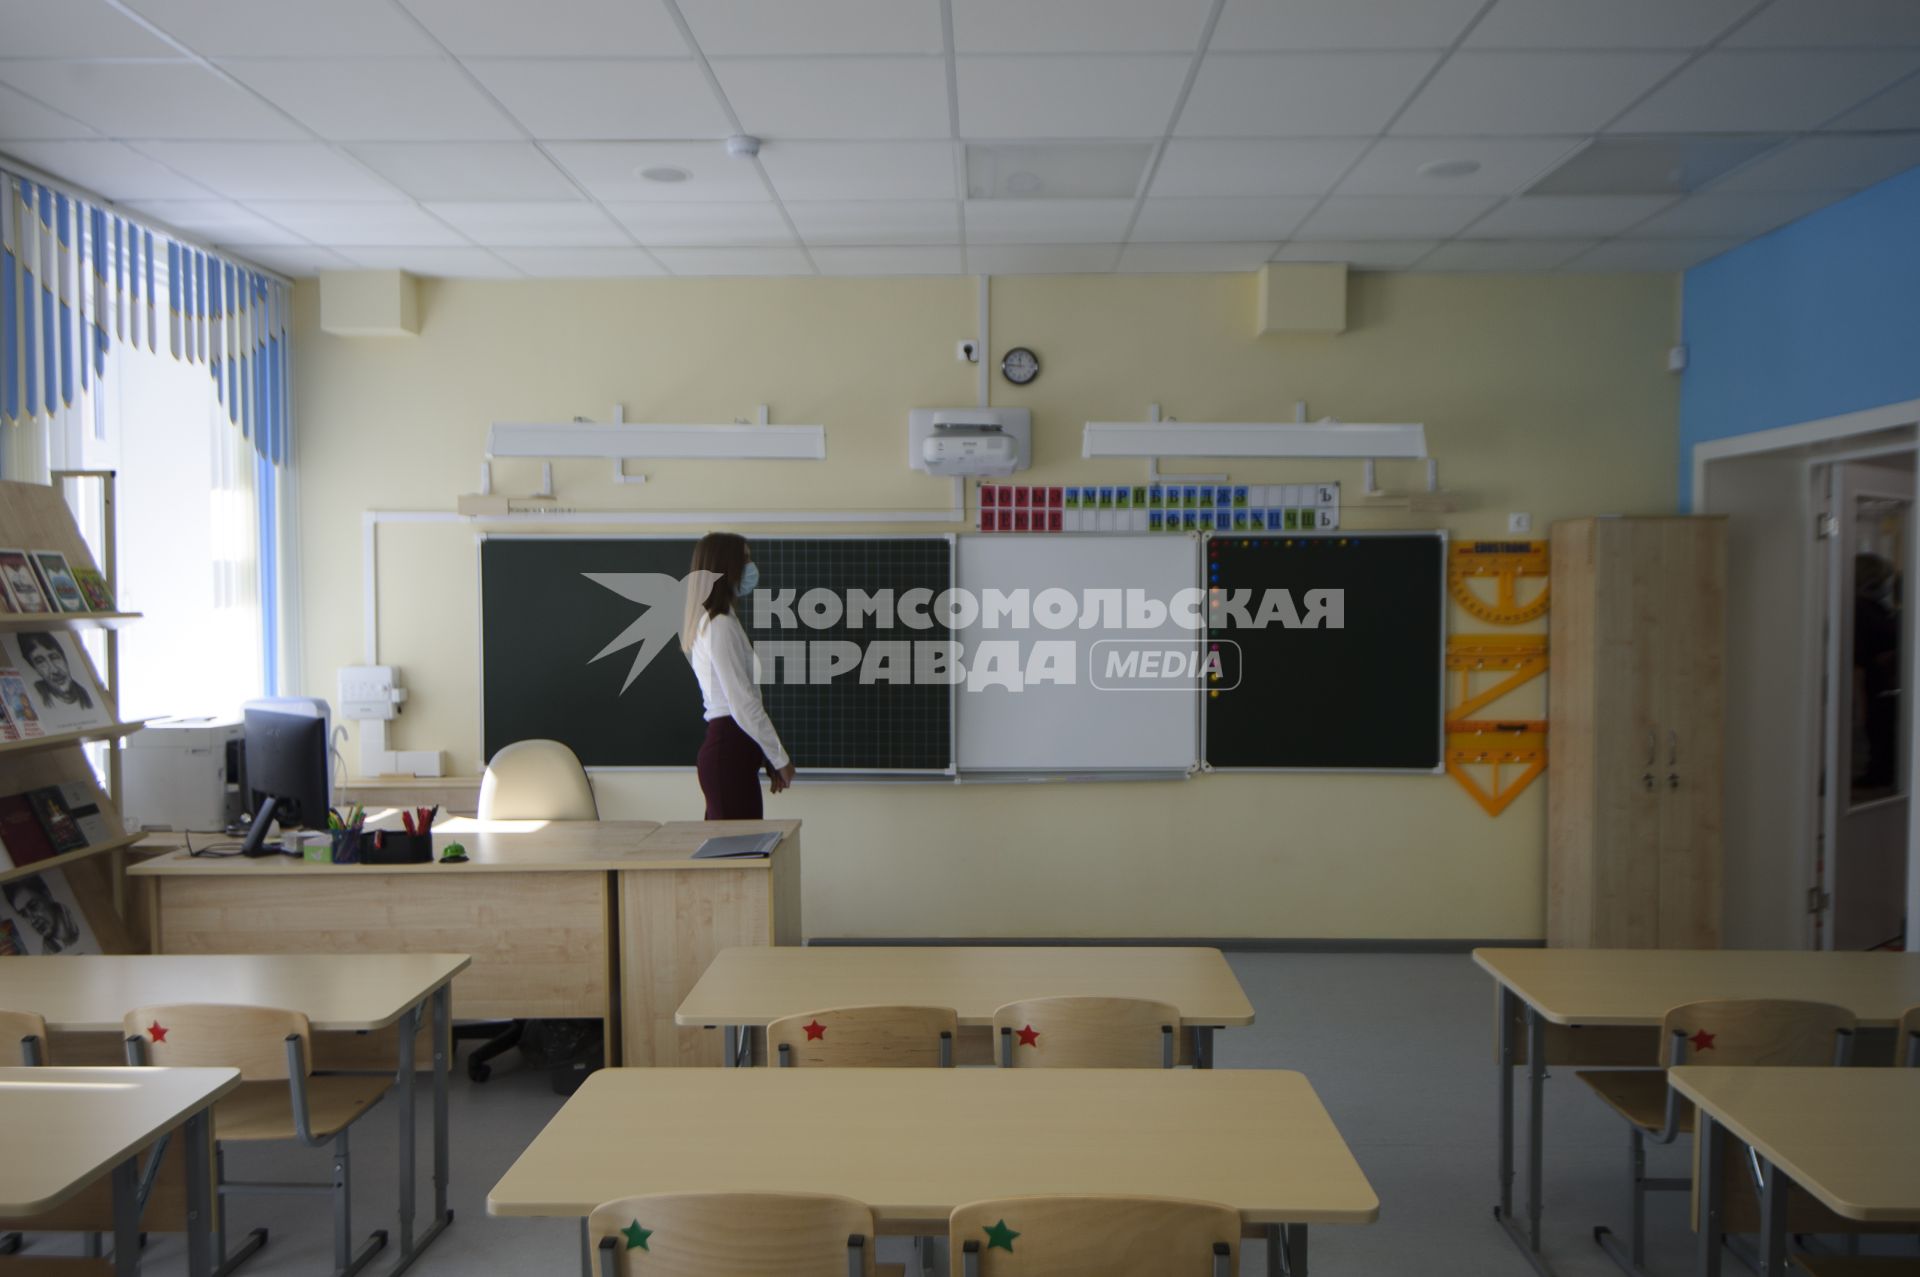 Екатеринбург. Учитель в учебном классе  среднеобразовательной школы открытой после реконструкции